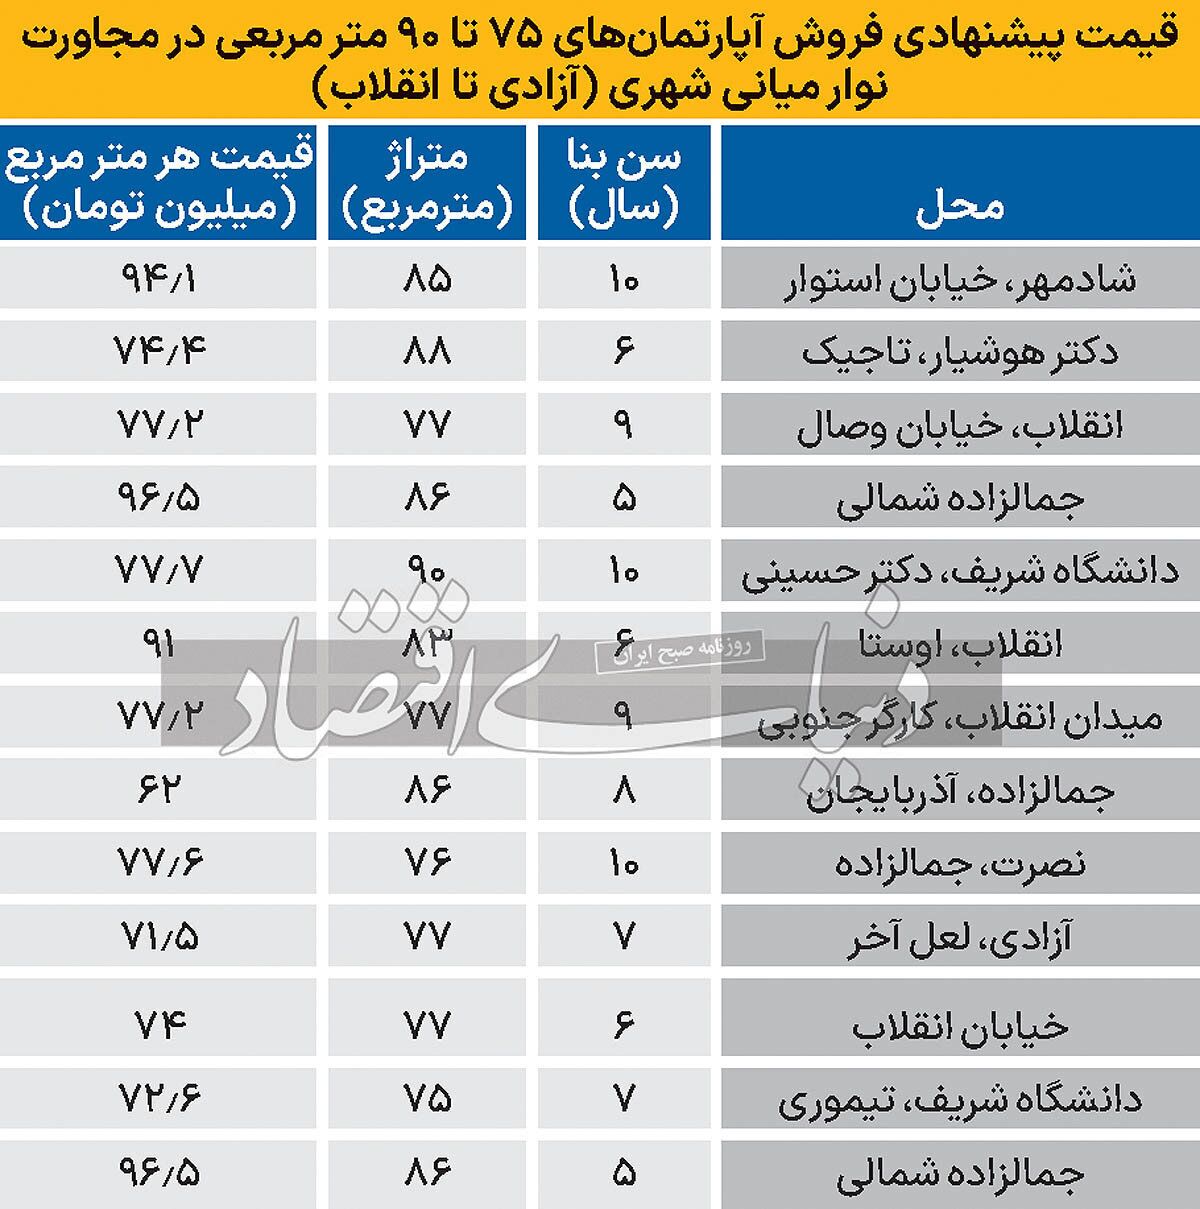 قیمت آپارتمان در قلب تهران + جدول